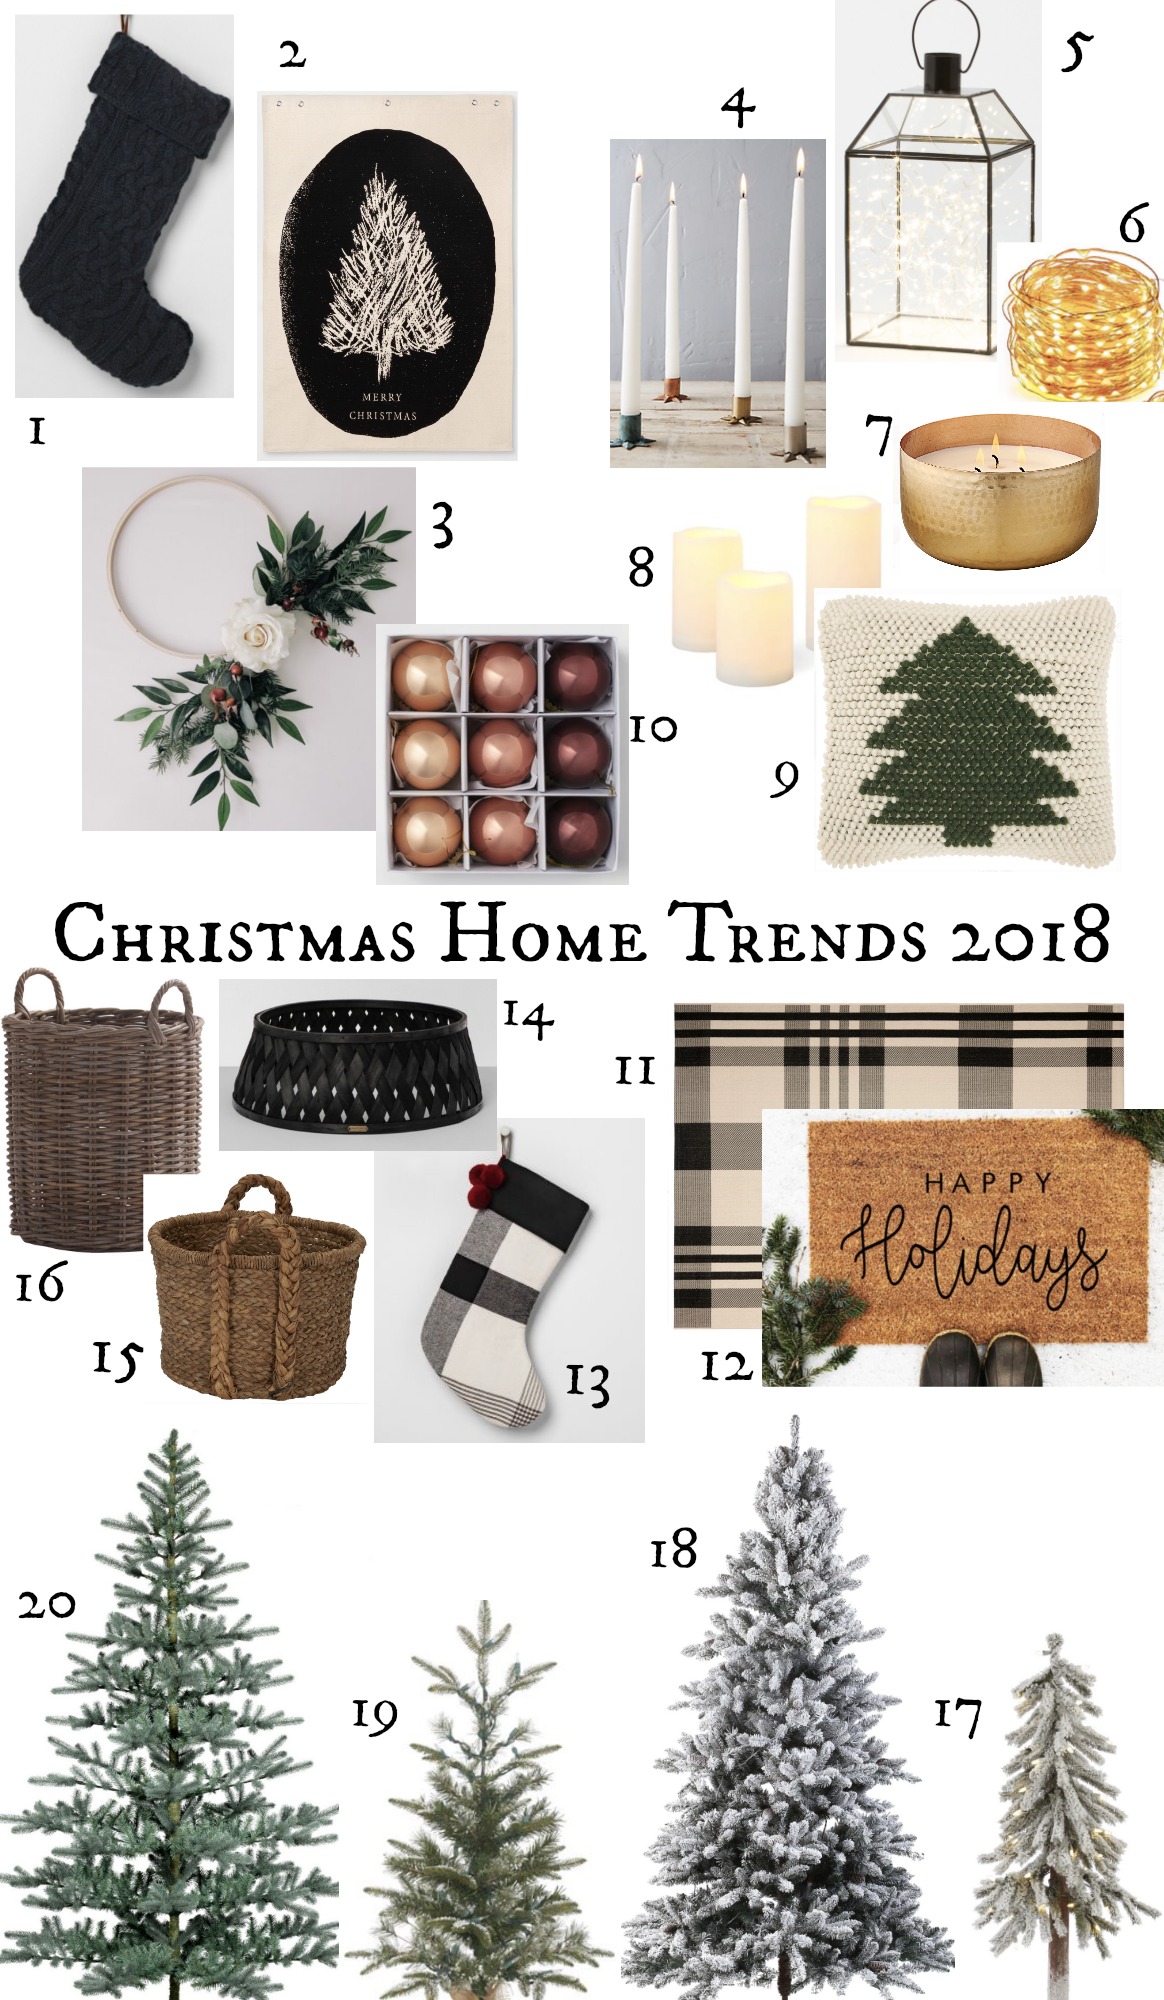 Christmas Home Decor Trends 2018